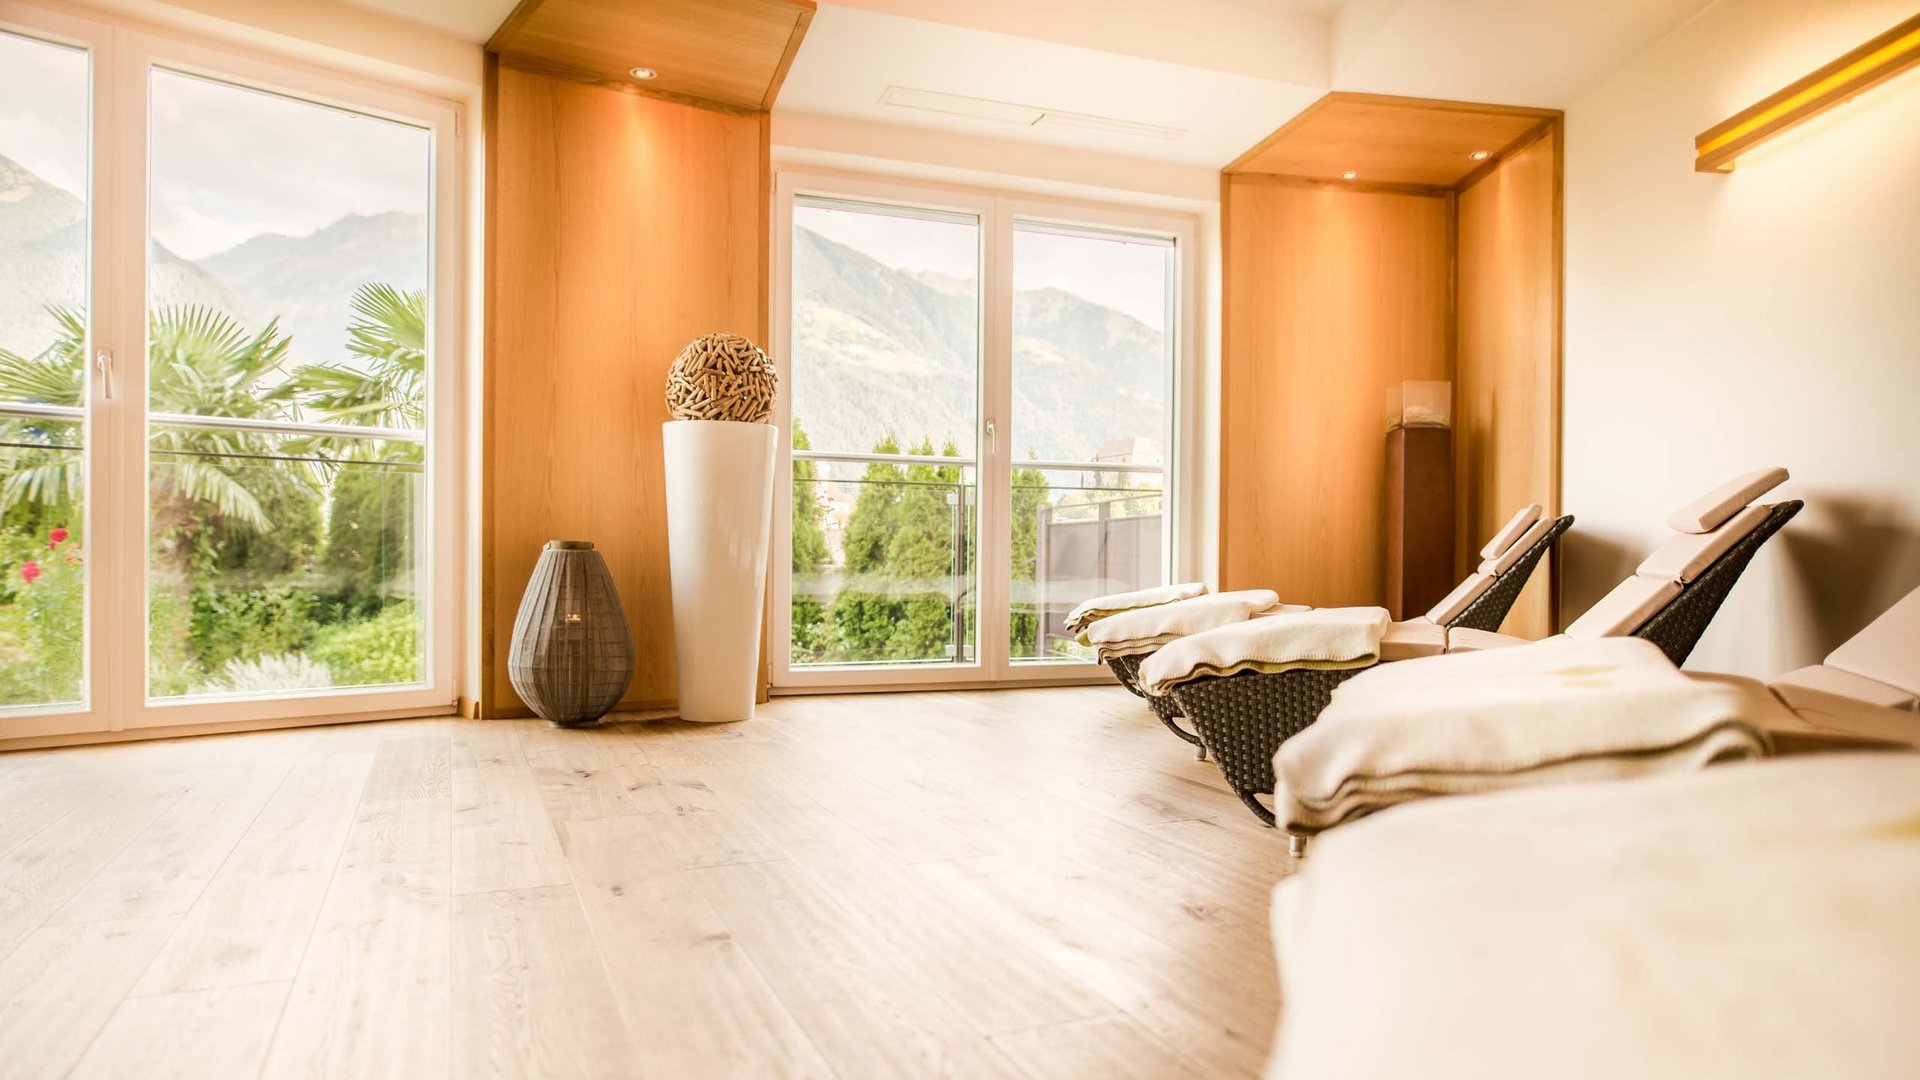 Una suite con spa privata in Alto Adige è pronta per voi